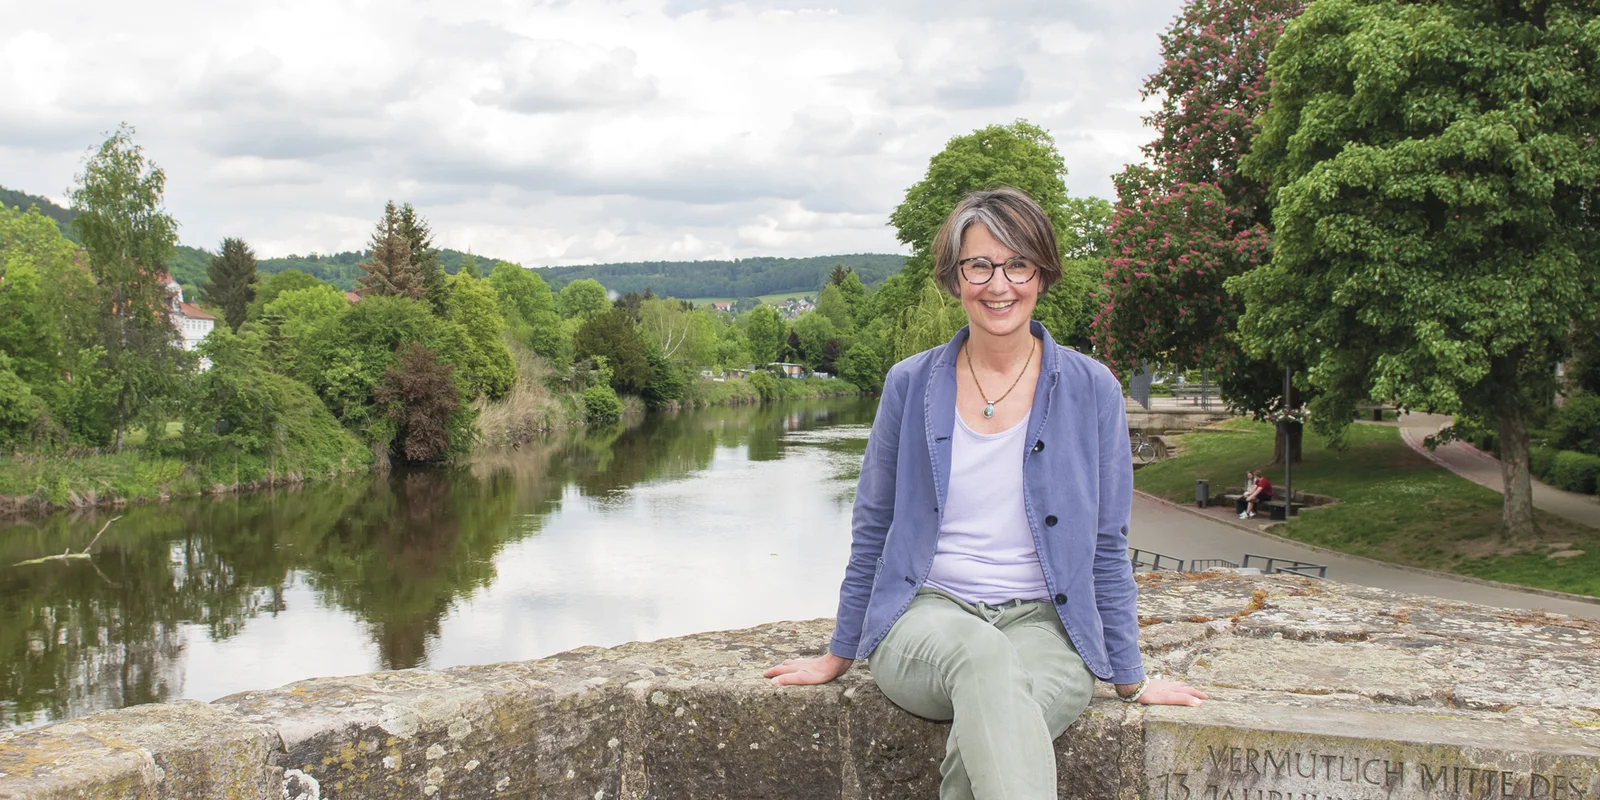 Anja Fehrensen sitzt lächelnd auf einer Steinmauer, im Hintergrund sieht man einen Flusslauf mit grünen Bäumen.